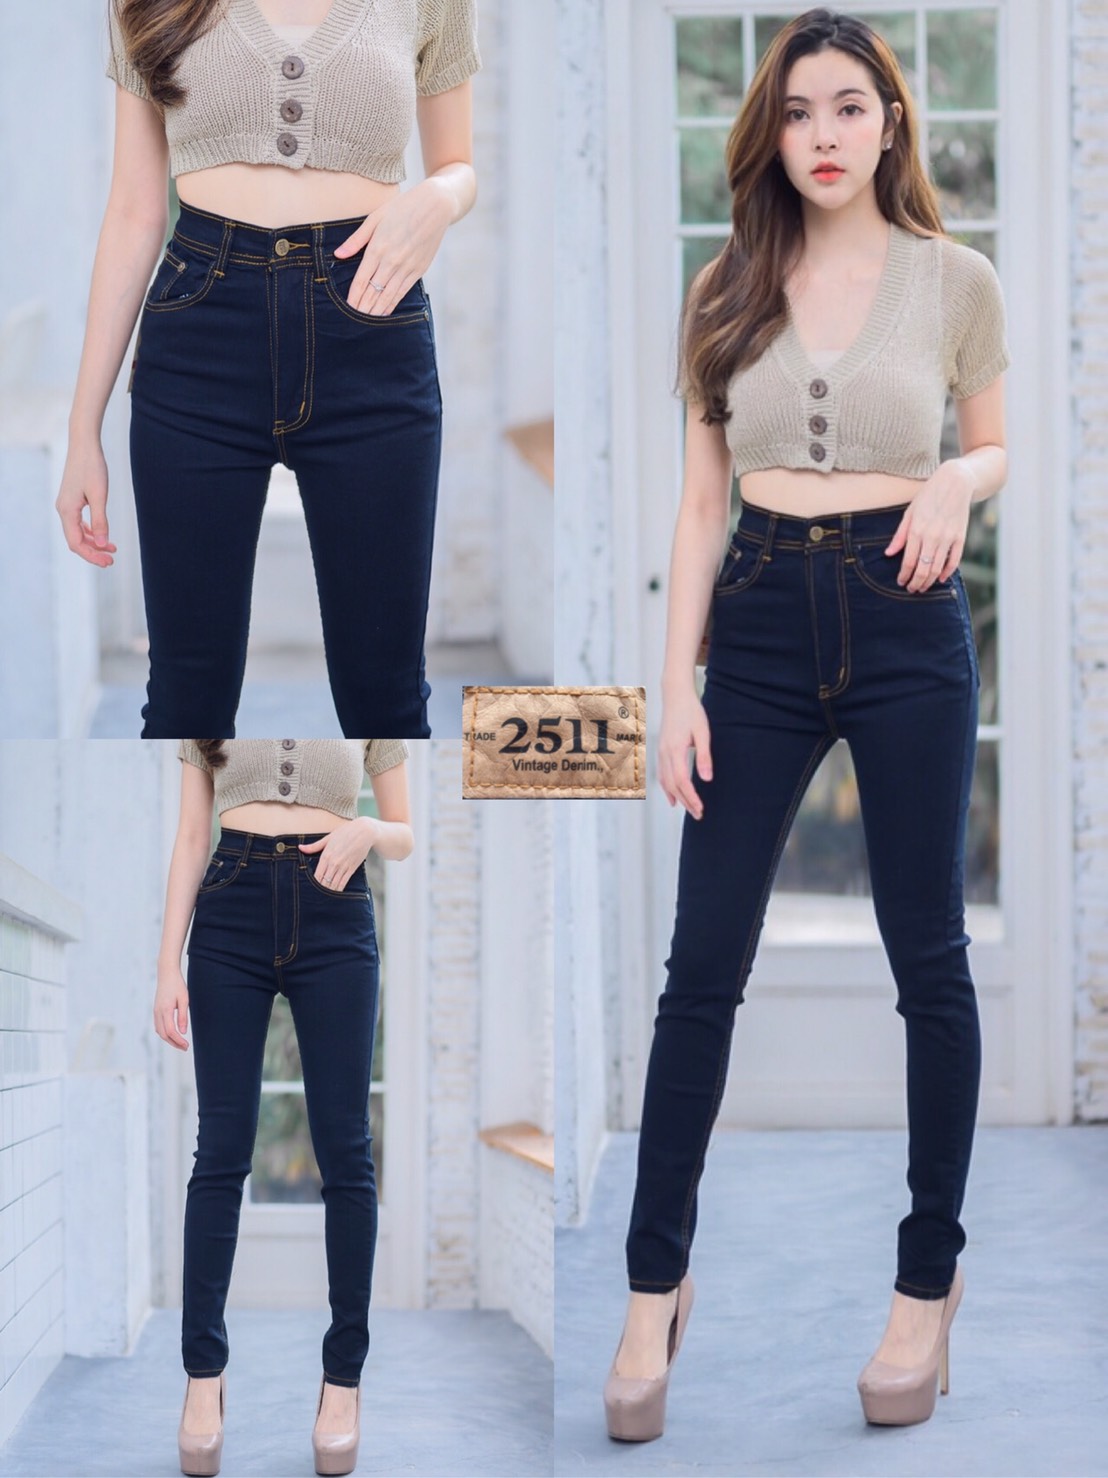 [[ถูกที่สุด]]2511 Vintage Denim Jeans by GREATกางเกงยีนส์ ผญ กางเกงแฟชั่นผู้หญิง กางเกงยีนส์ยืด กางเกงยีนส์ เอวสูง ยีนส์เอวสูง